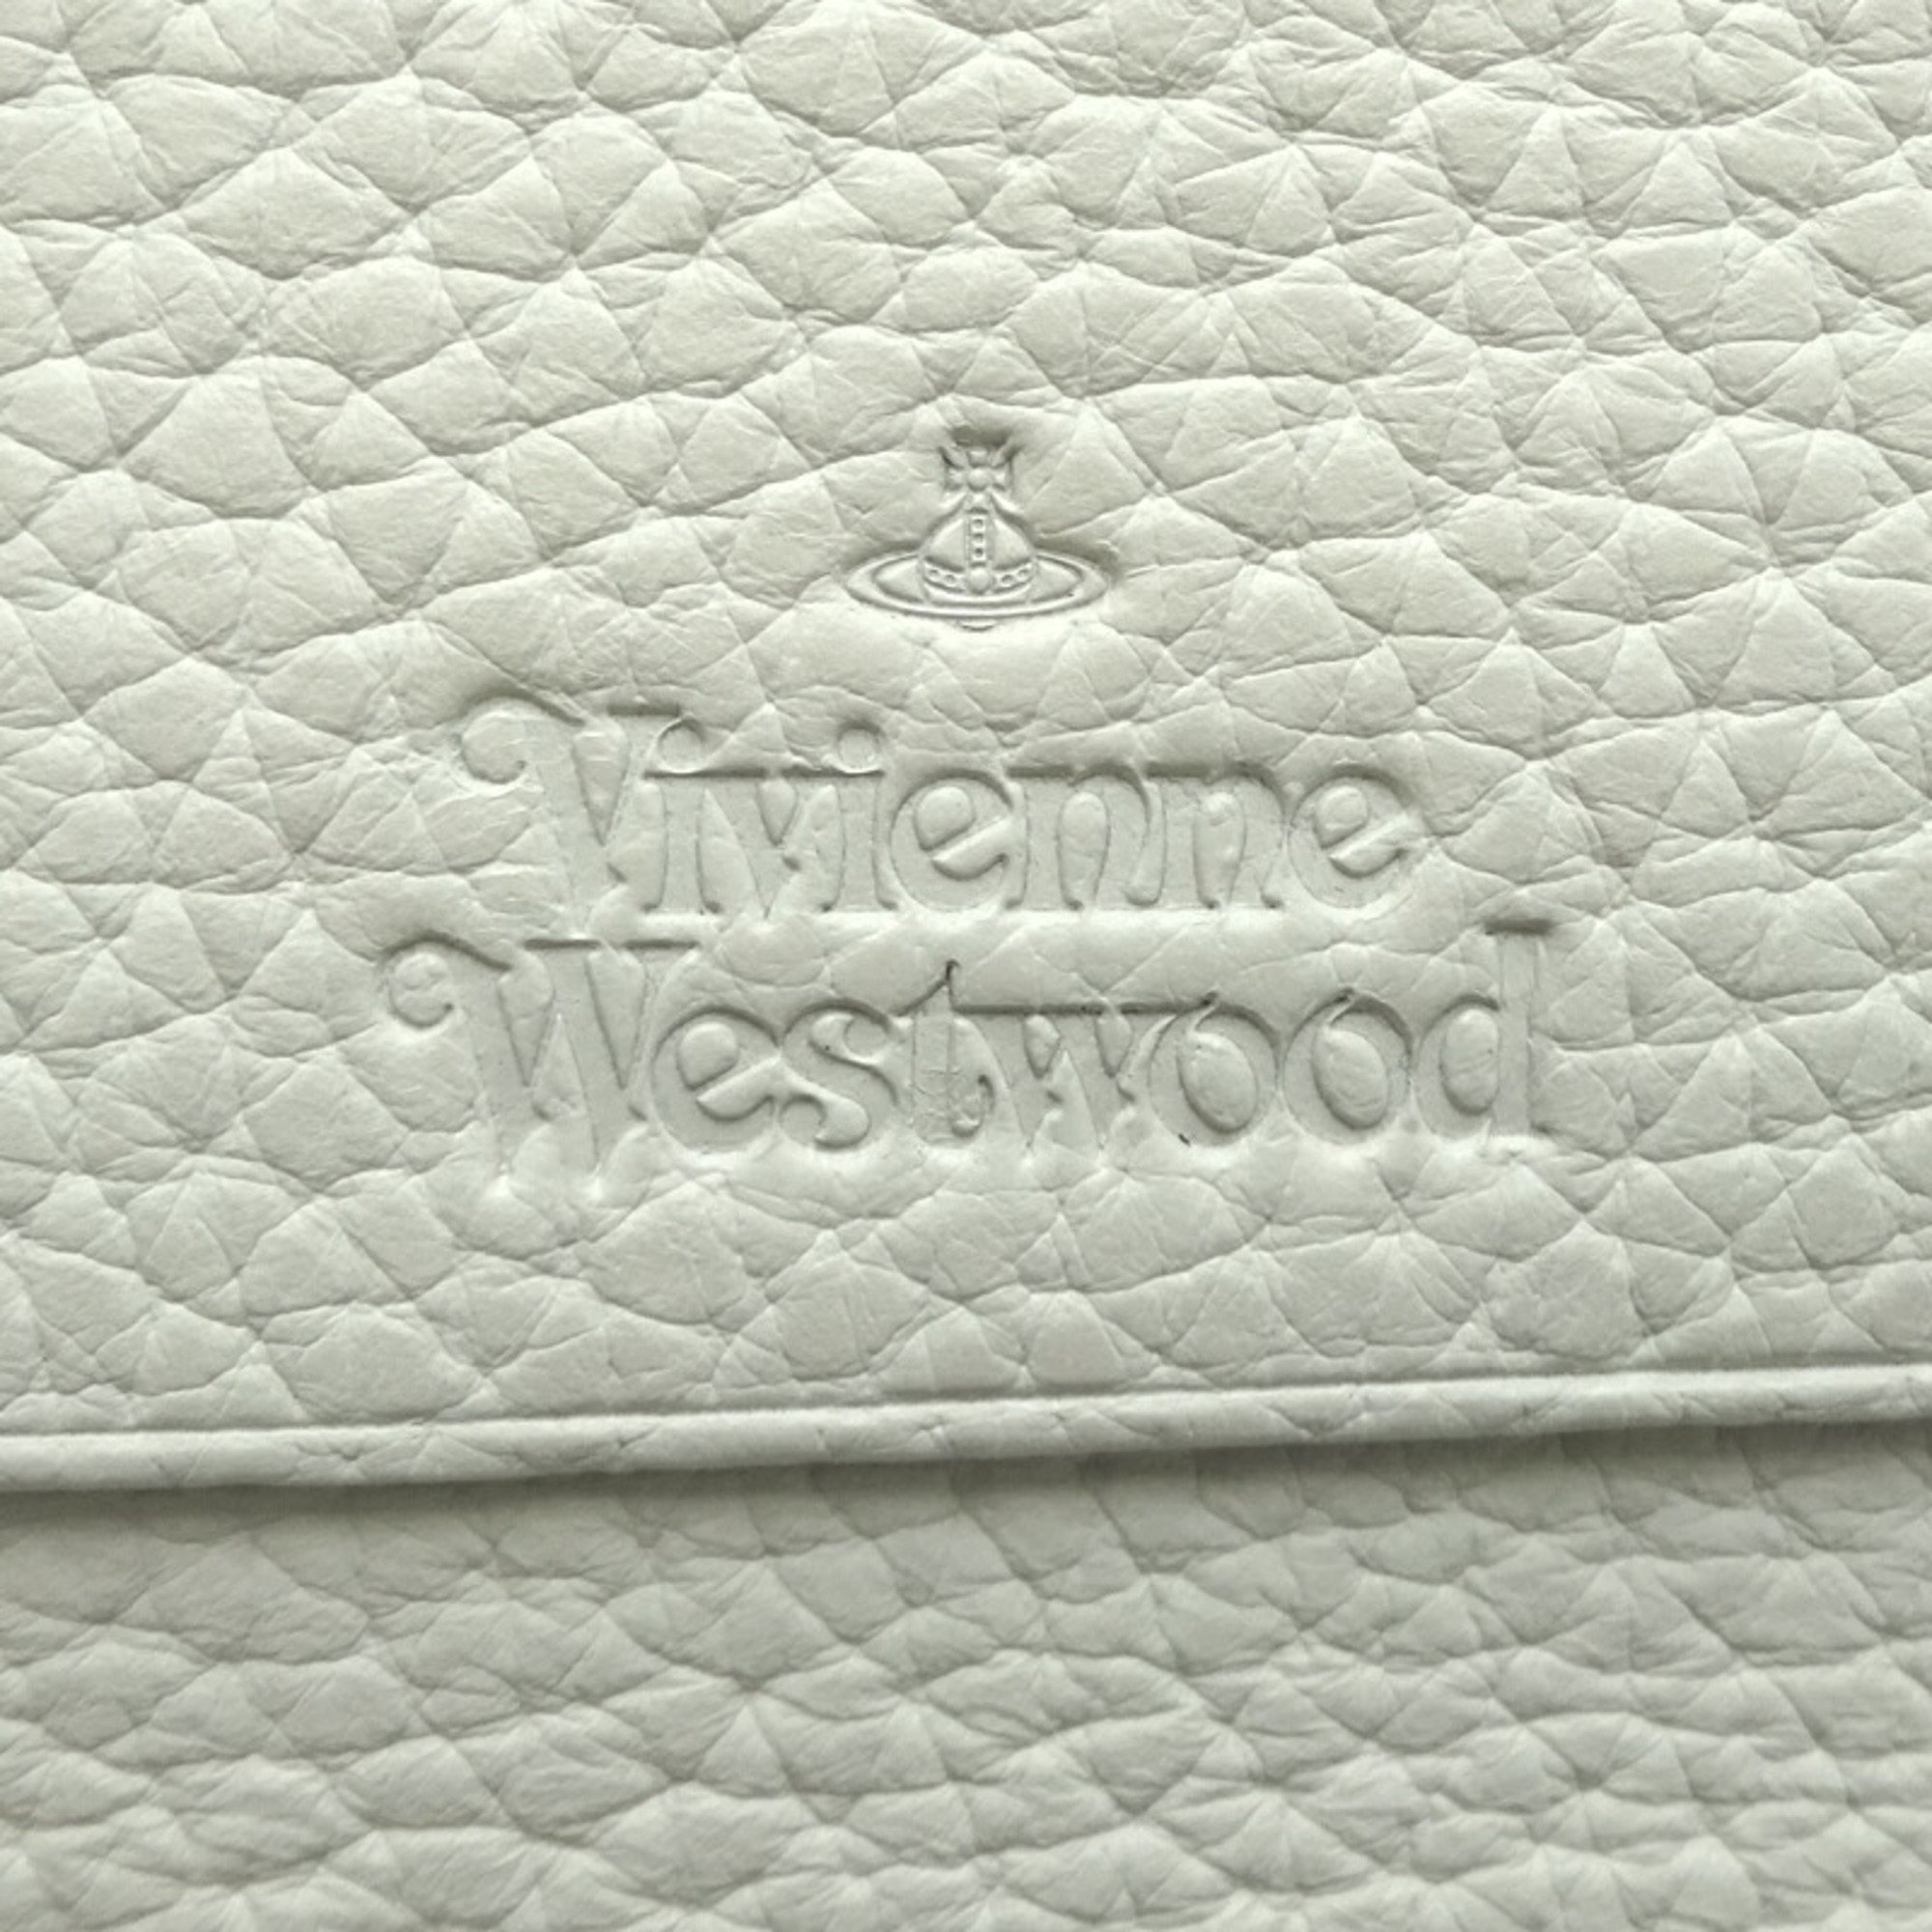 Vivienne Westwood Long Wallet Women's Leather Multicolor